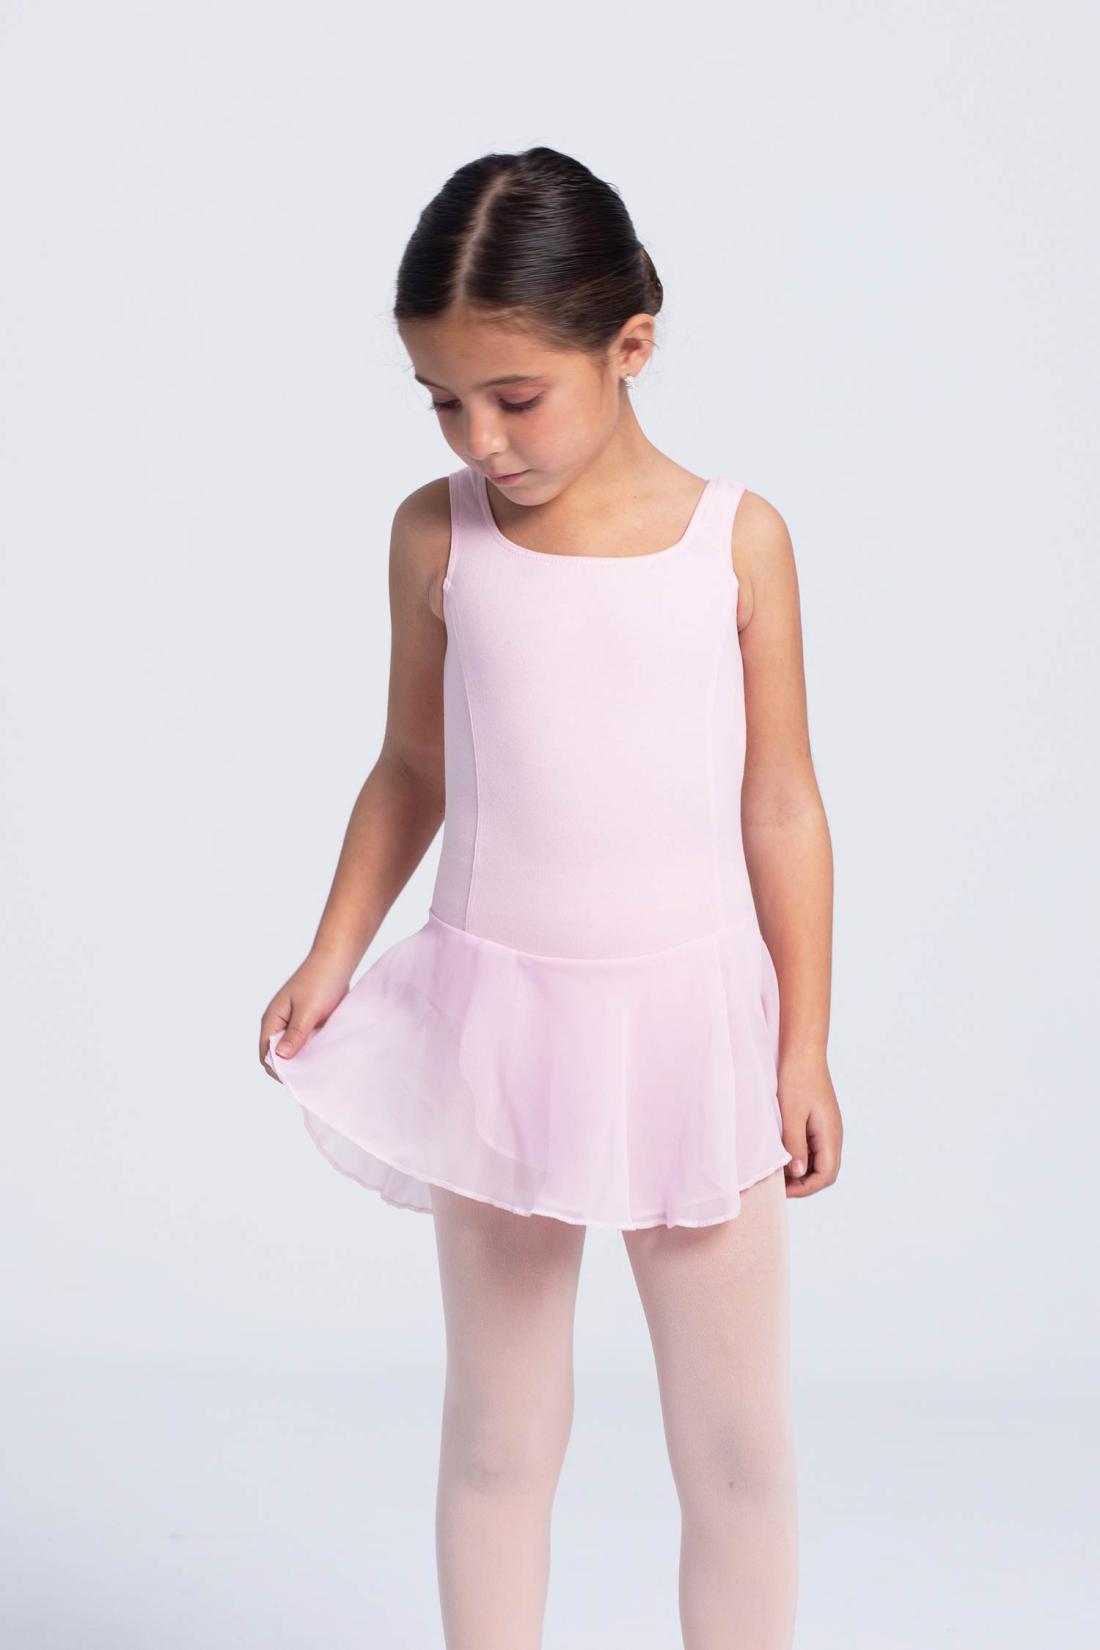 Tank skirted ballet dress for girls in Meryl fabric Intermezzo dance